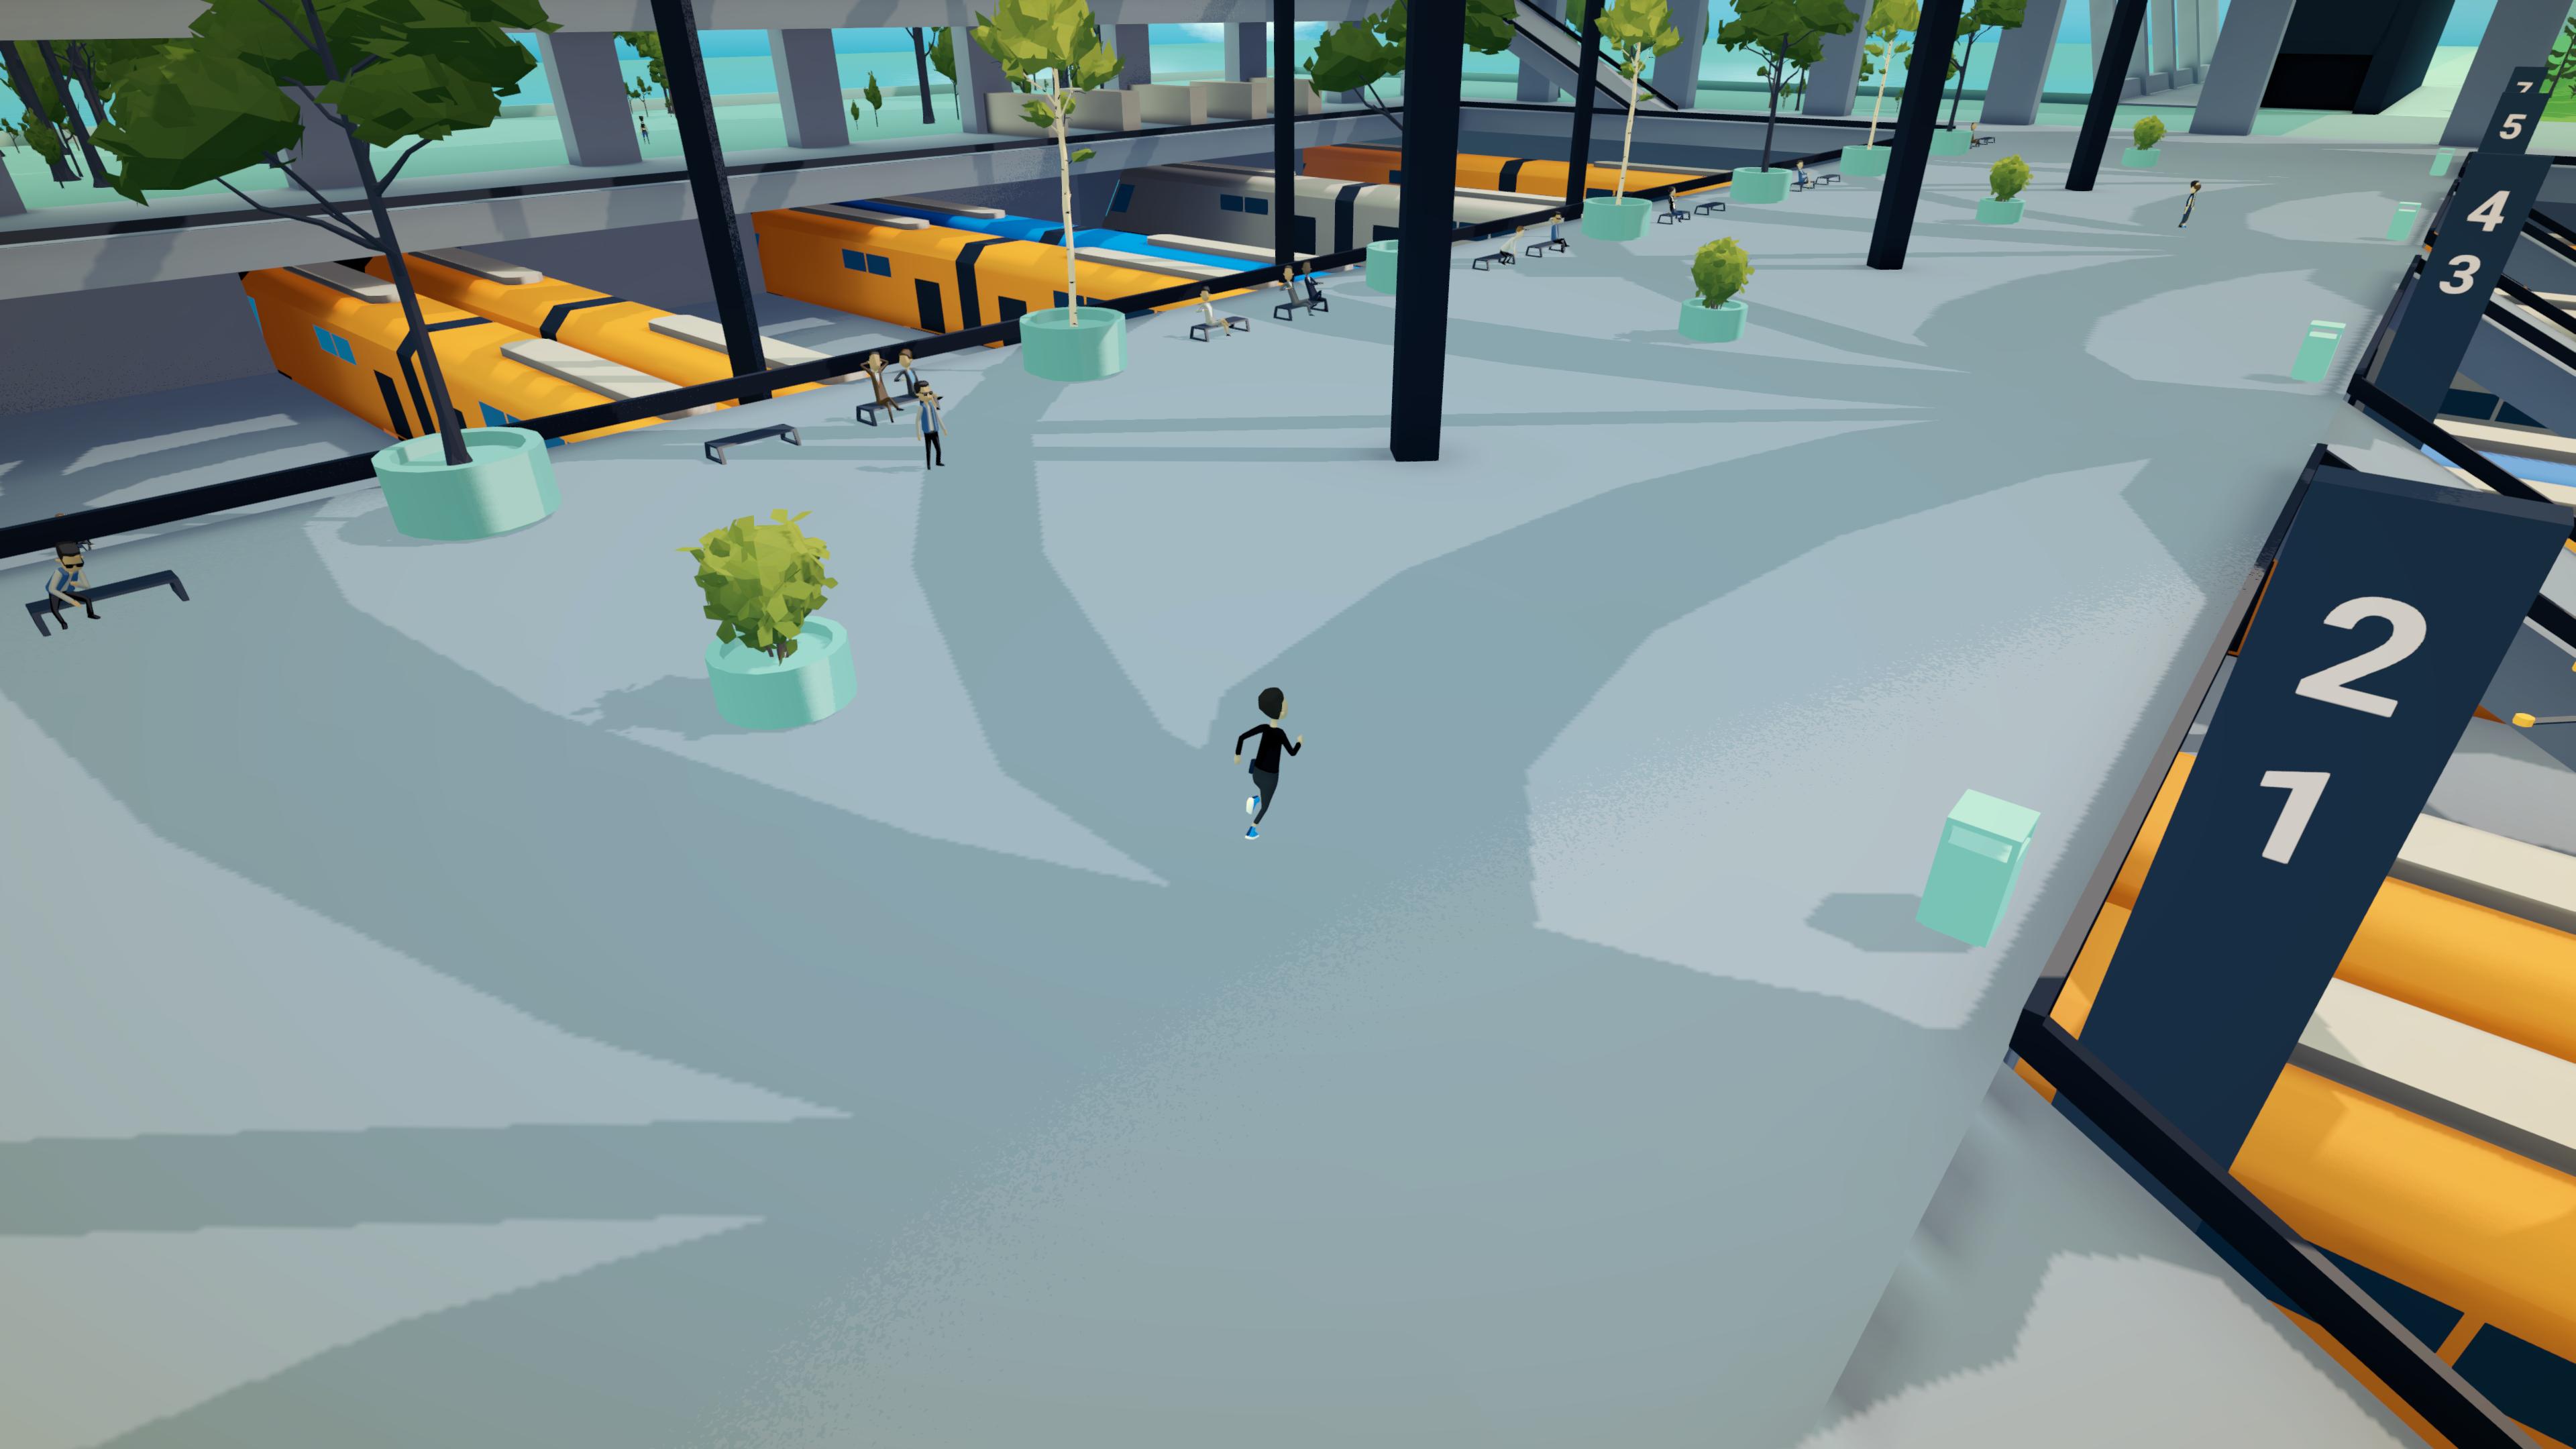 Protagonist running through train station